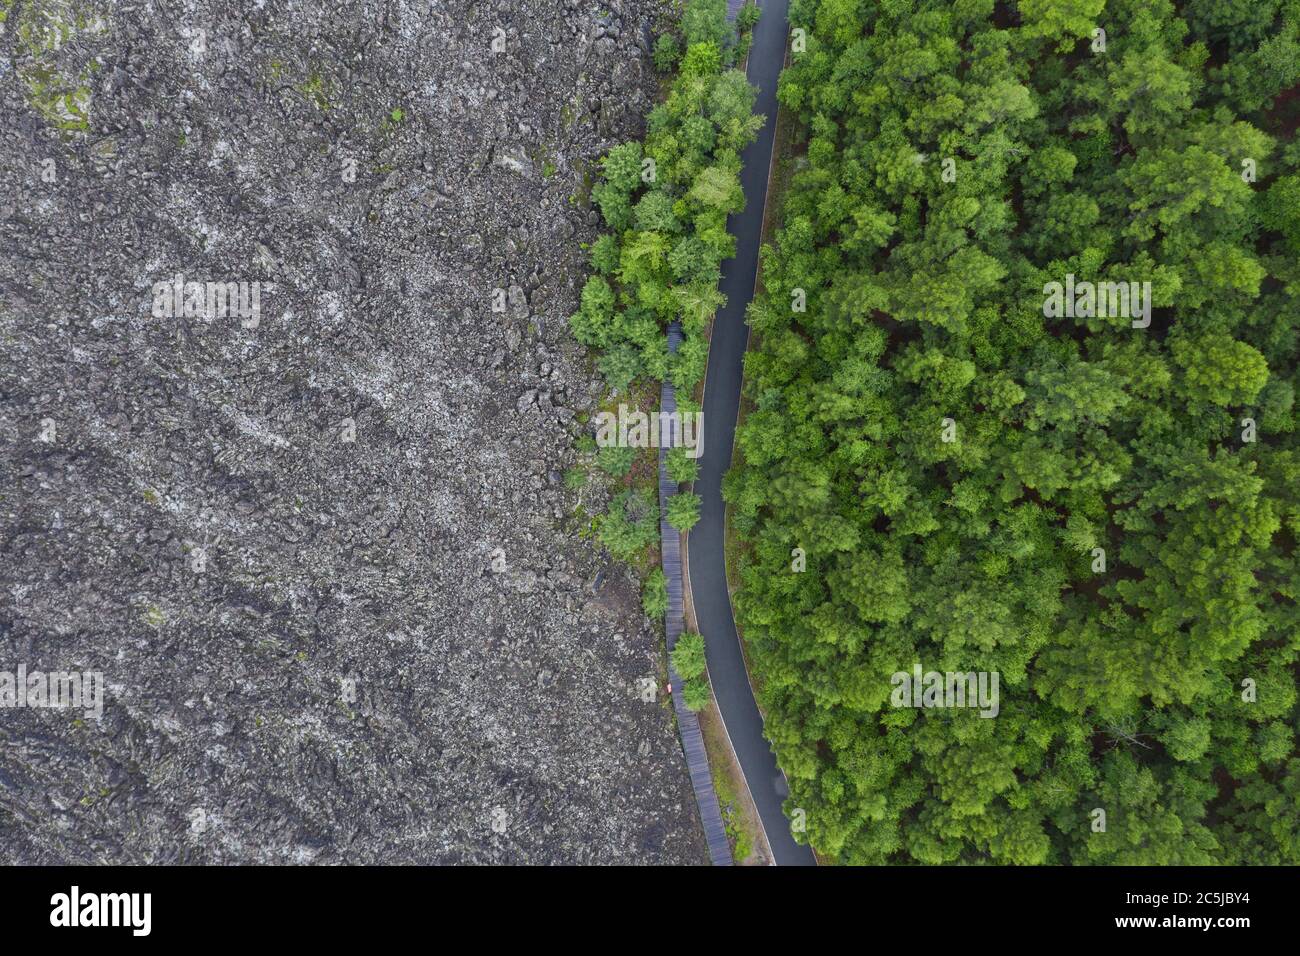 Wudaljanchi. Juli 2020. Luftaufnahme vom 3. Juli 2020 zeigt die Landschaft von Wudaljanchi szenischen Ort in Heihe, nordöstlich Chinas Heilongjiang Provinz. Wudaljanchi, oder fünf Lavastauden Seen, besitzt unbeschädigte typische Vulkangeologie und Geomorphologie und wird von Geologen als "Natural Volcano Musuem" angesehen. Quelle: Xie Jianfei/Xinhua/Alamy Live News Stockfoto